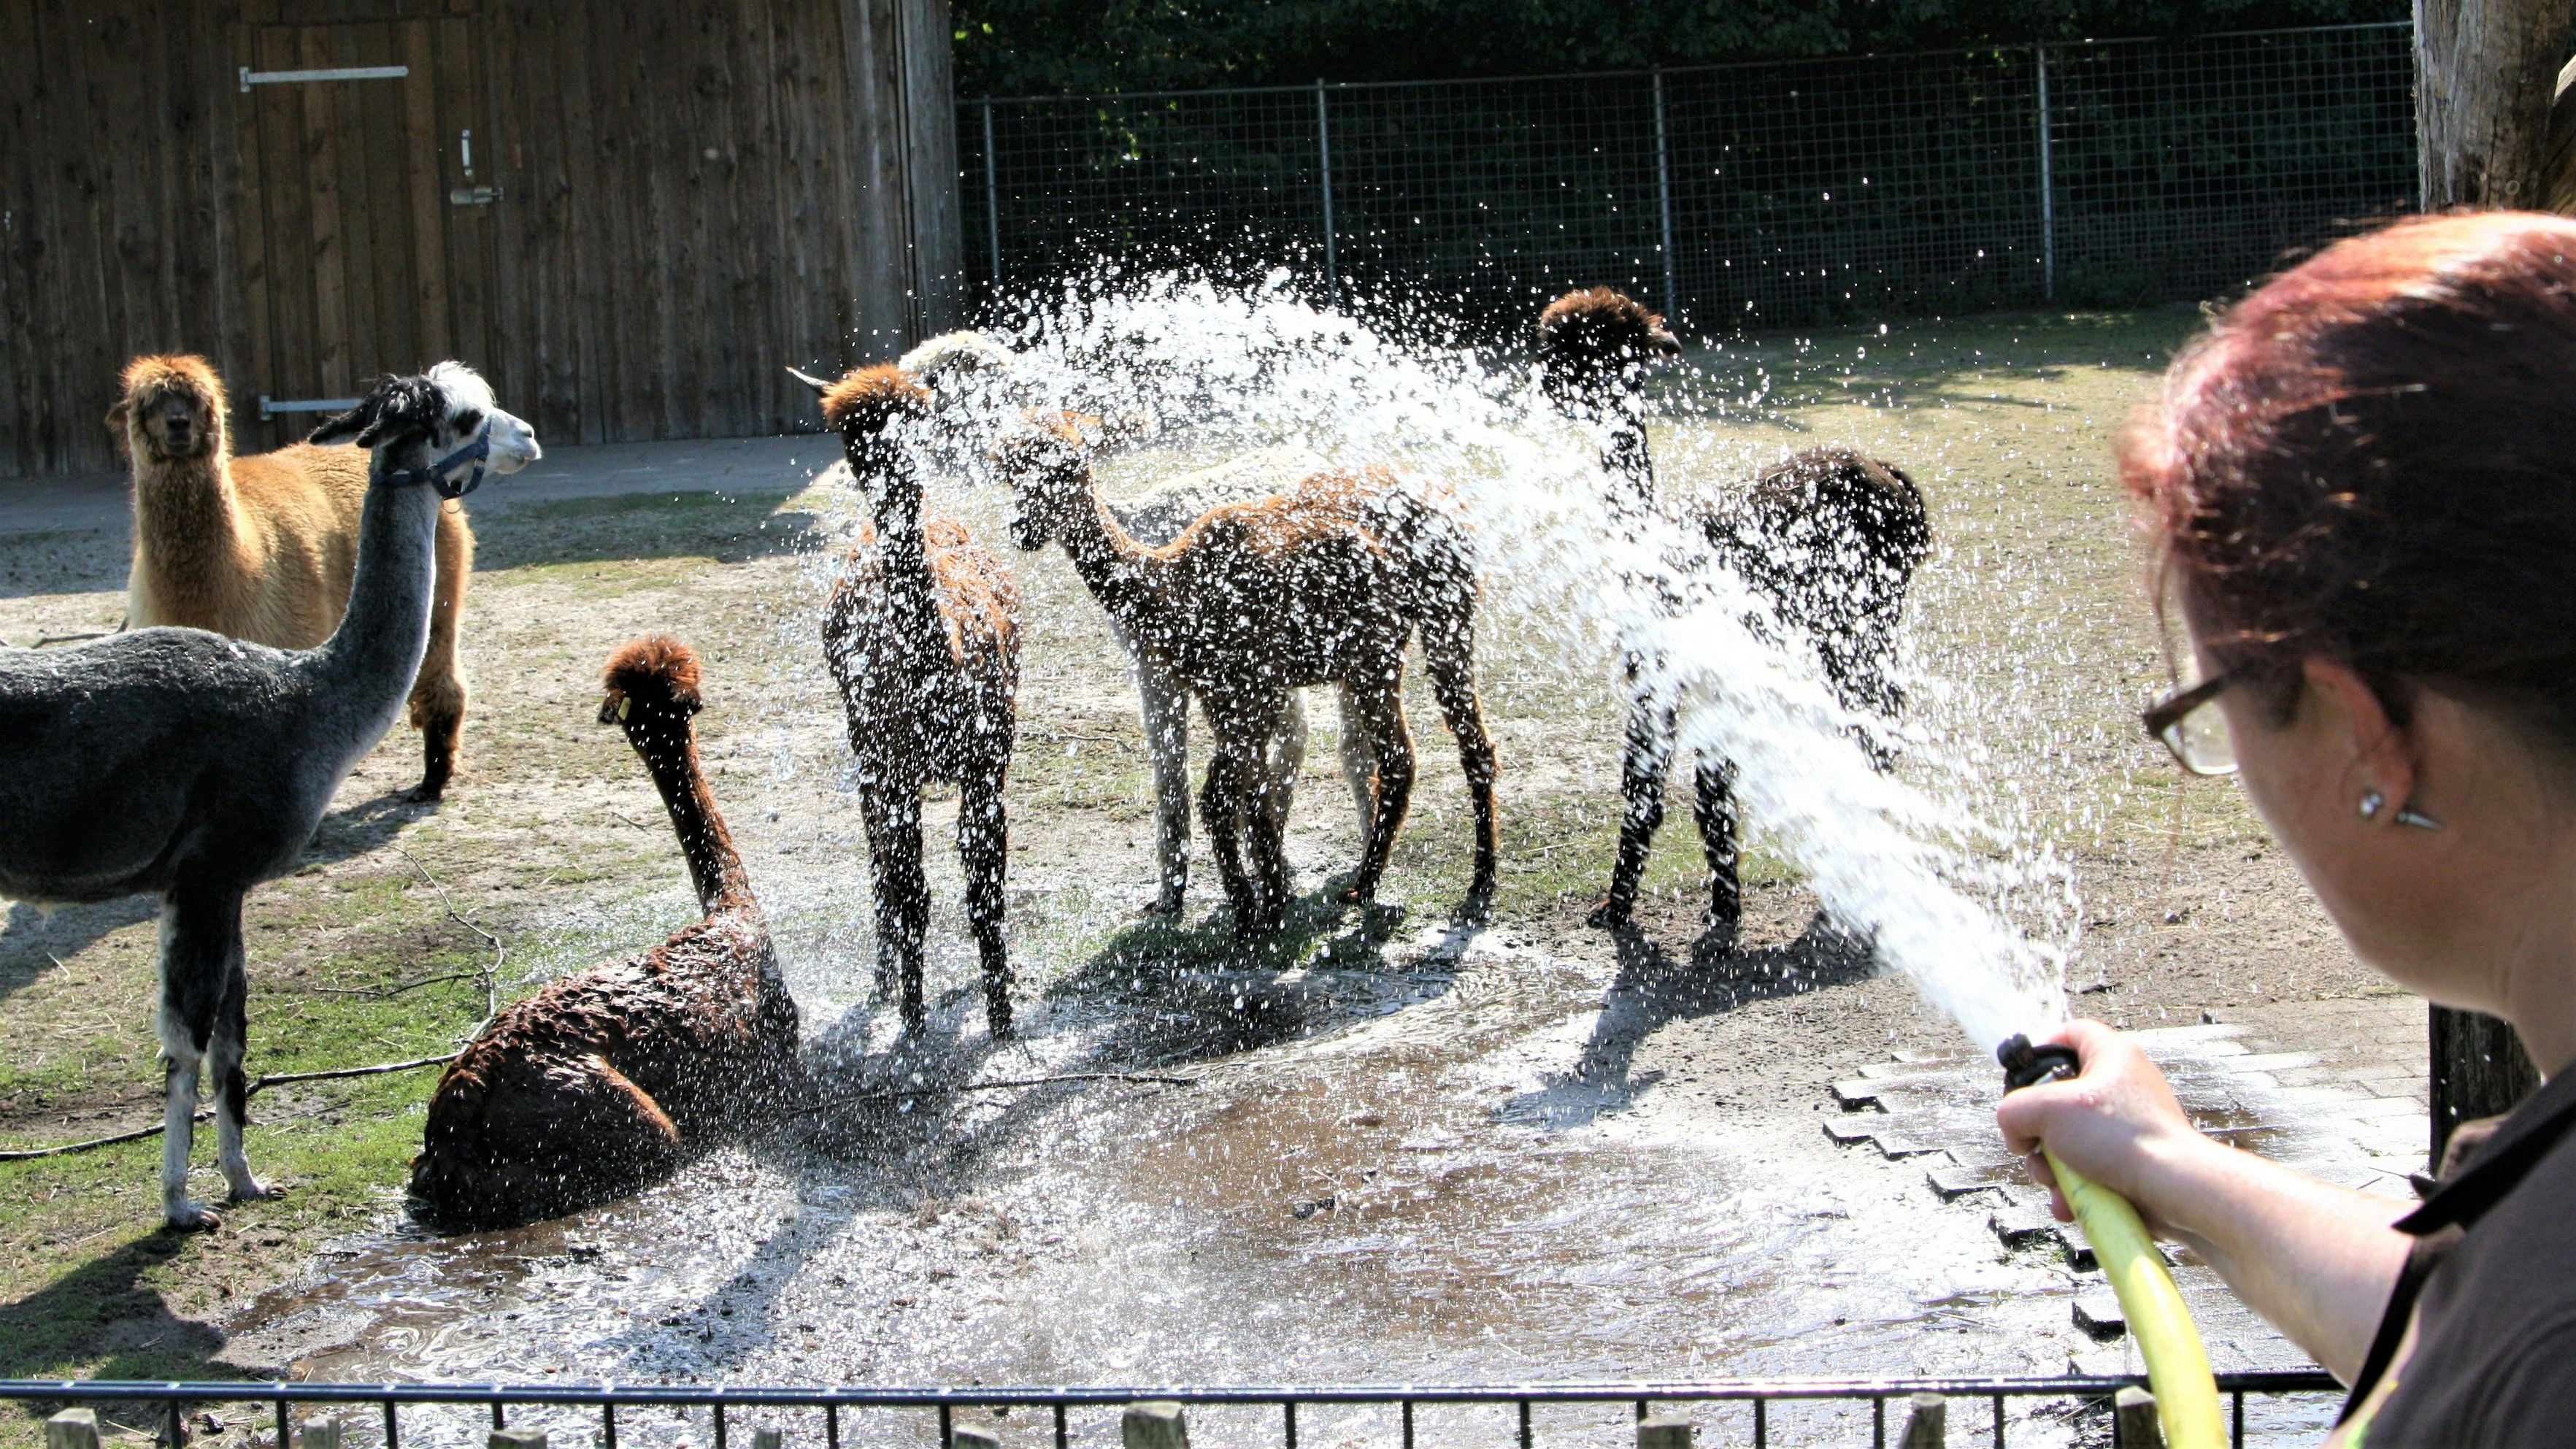 Willkommene Abkühlung: Die Alpakas genießen offensichtlich die Dusche aus dem Wasserschlauch. Foto: Pille